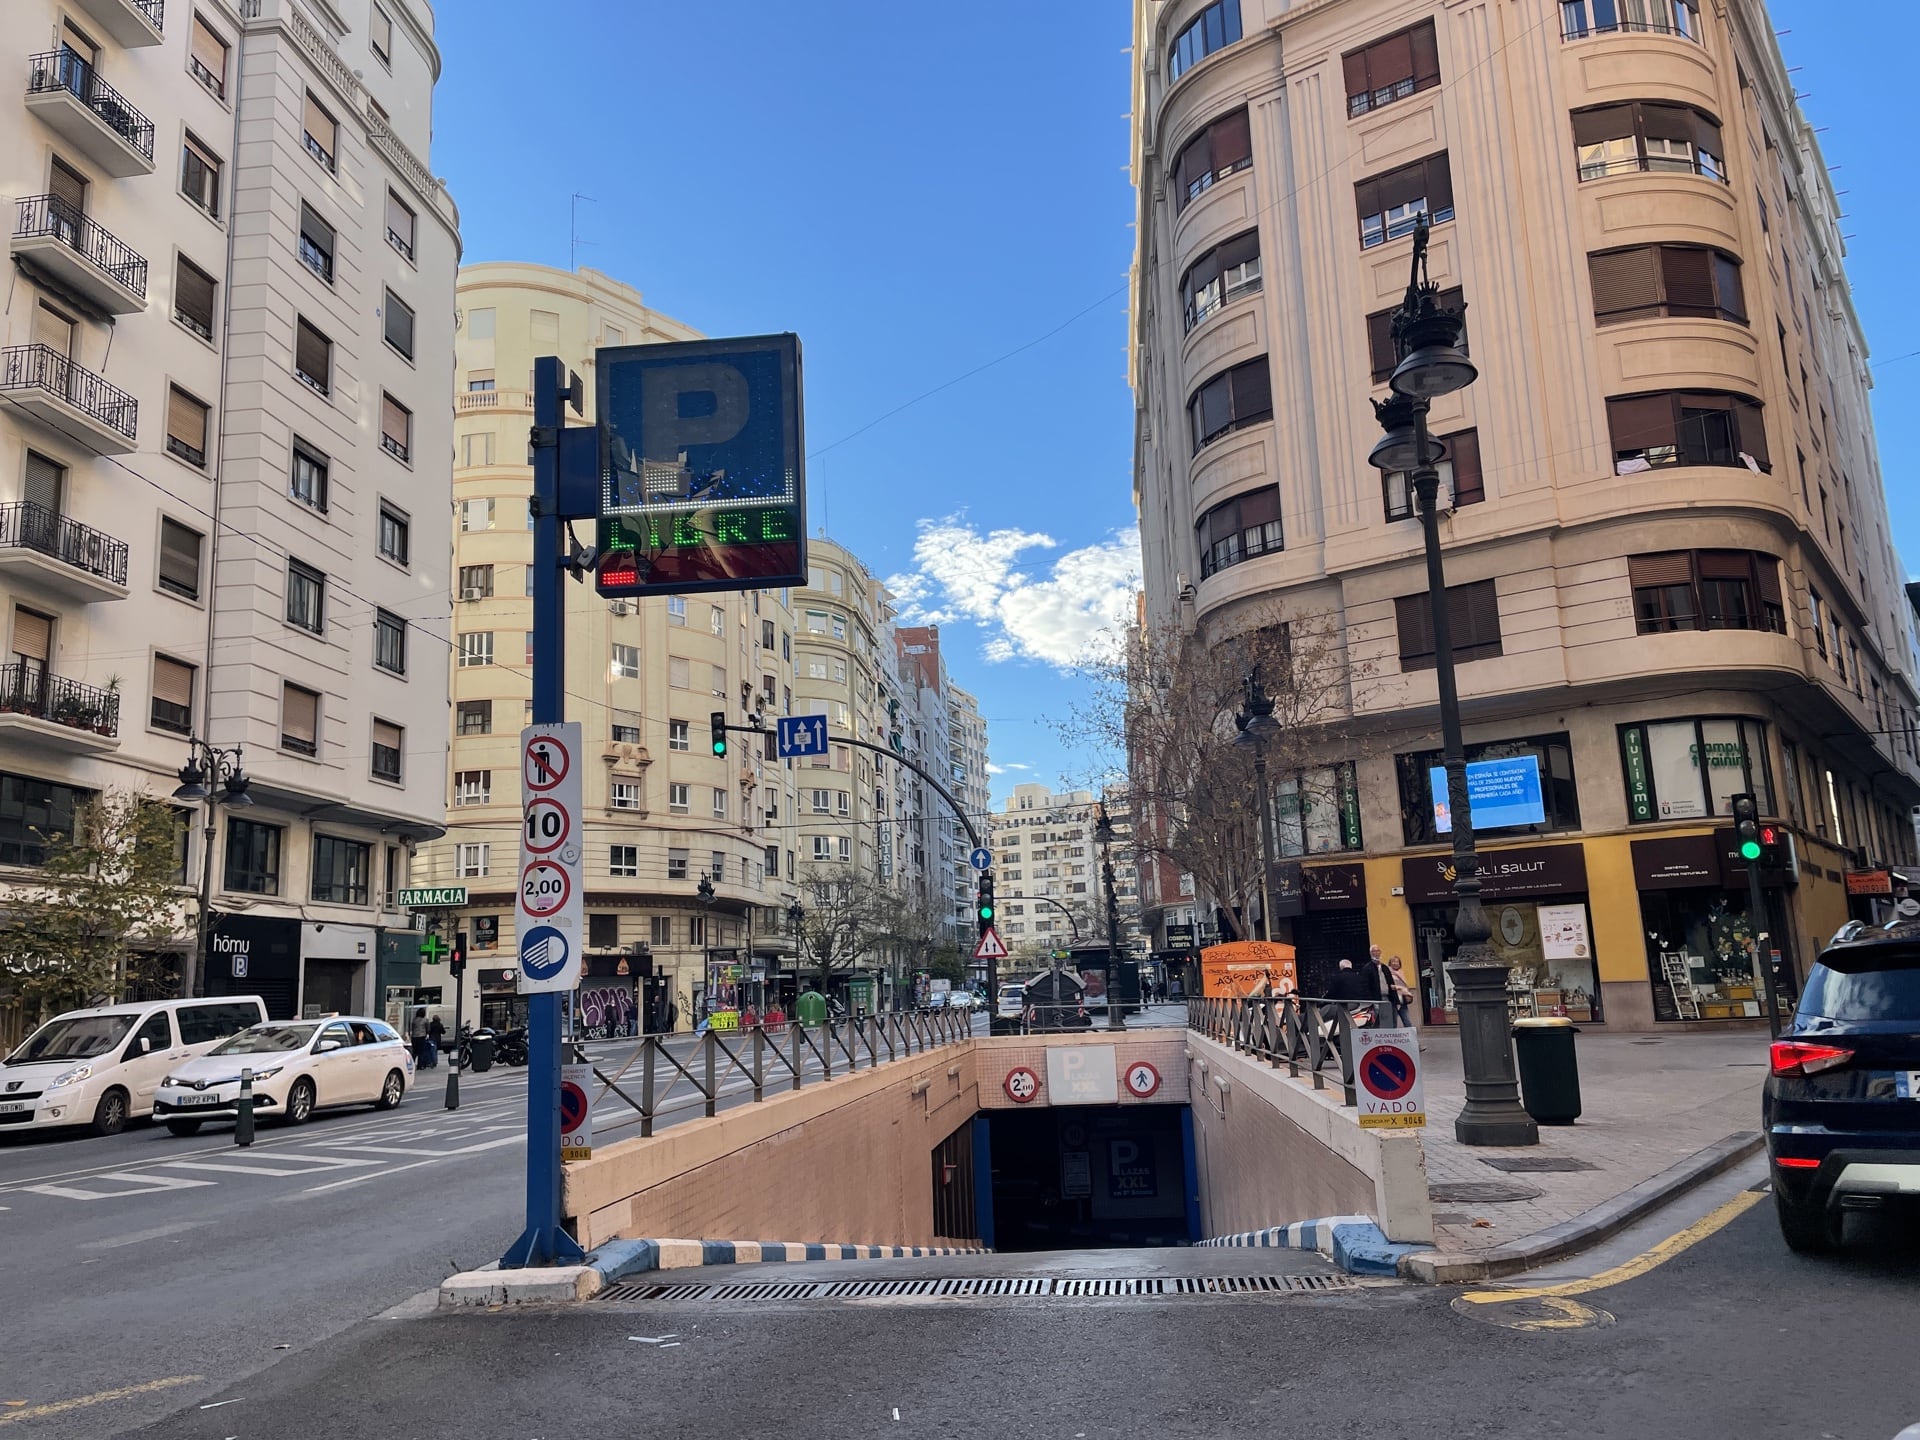 Estacionamento em Valência na Espanha